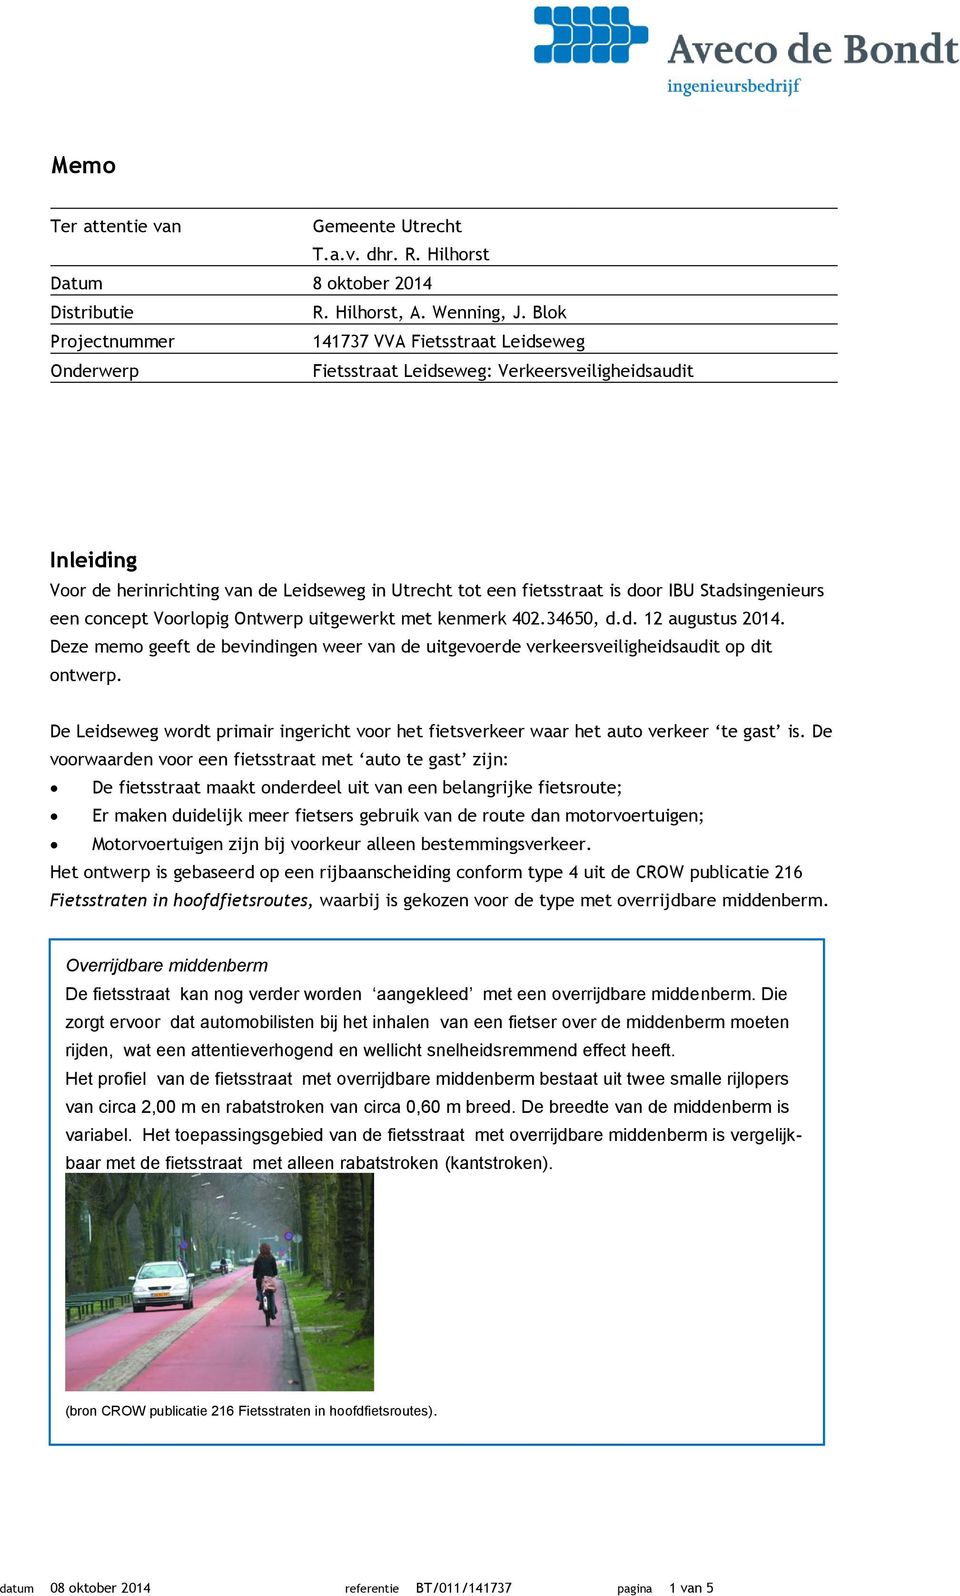 IBU Stadsingenieurs een concept Voorlopig Ontwerp uitgewerkt met kenmerk 402.34650, d.d. 12 augustus 2014.